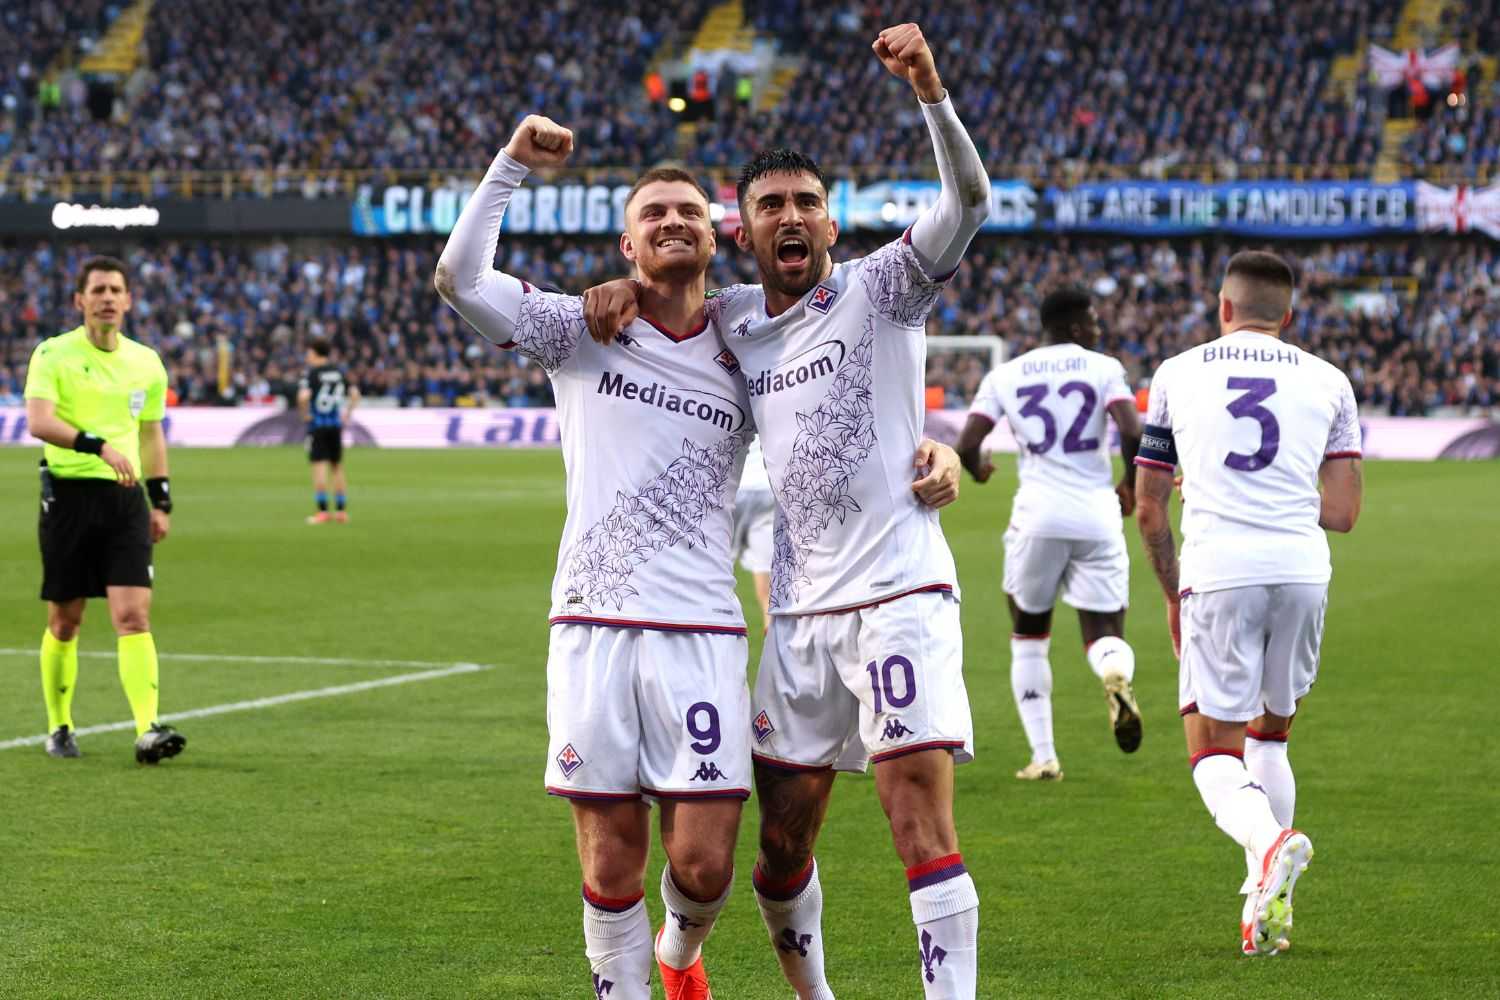 La Conference League si tinge di Viola: la Fiorentina entra nella storia